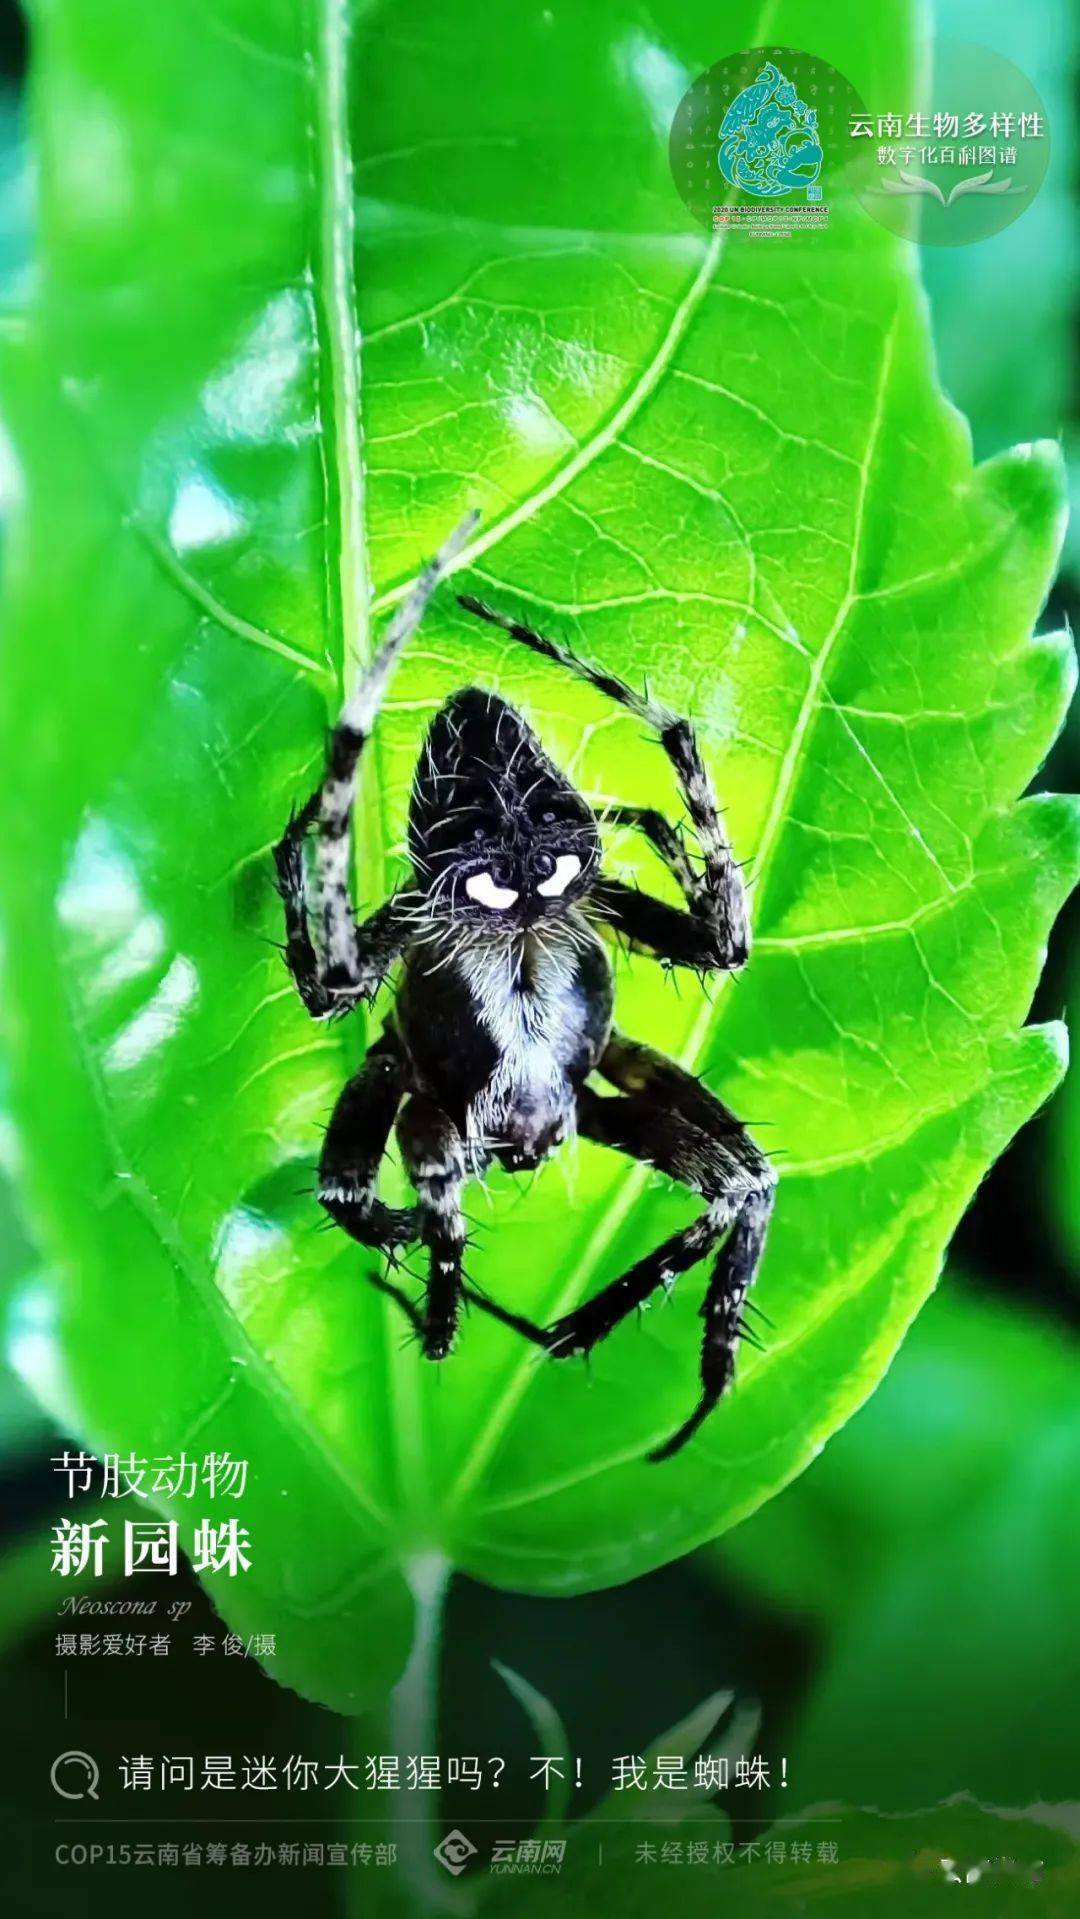 新园蛛neoscona sp新园蛛属,隶属于节肢动物门,蛛形纲,蜘蛛目,园蛛科